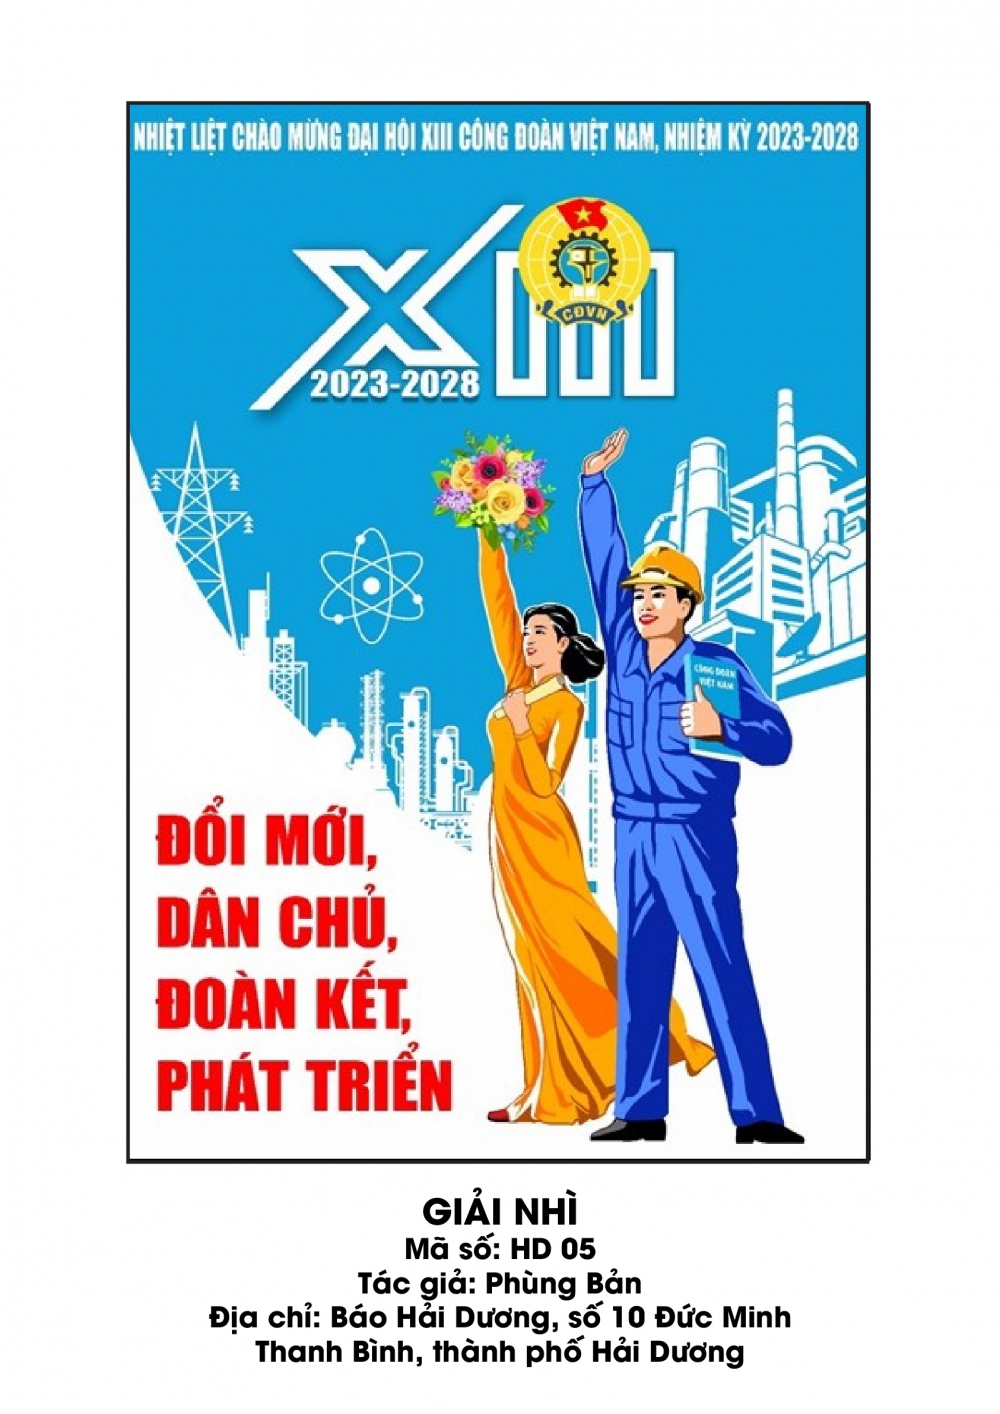 10 tác phẩm đoạt giải thi thiết kế biểu trưng và tranh cổ động Đại hội XIII Công đoàn Việt Nam